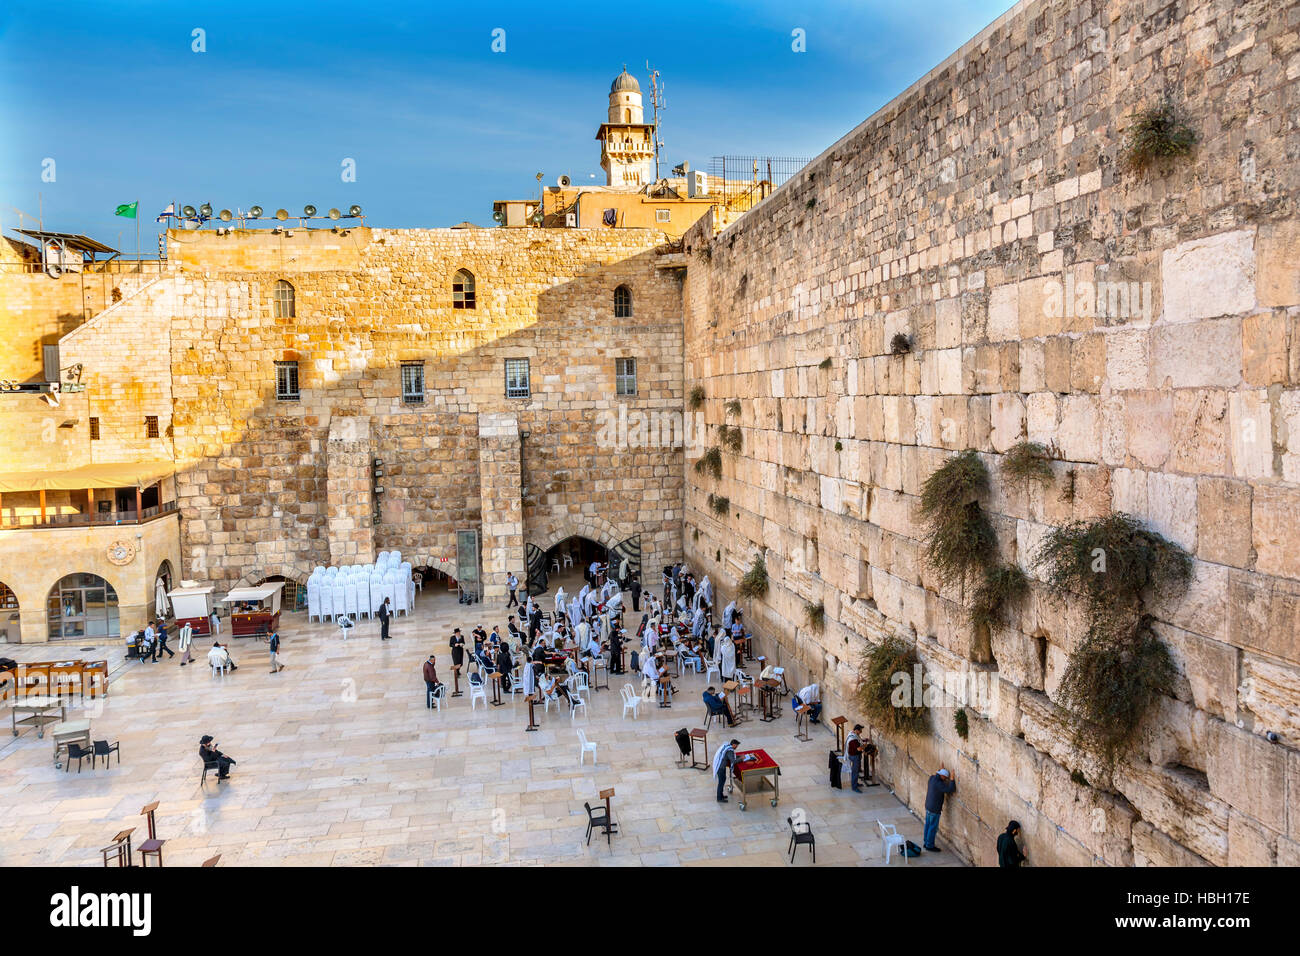 Pregando presso la Western'pianto' parete dell antico tempio di Gerusalemme in Israele. Parete occidentale dell'antico tempio ebraico costruito nel 100 A.C. da Erode il Grande Foto Stock